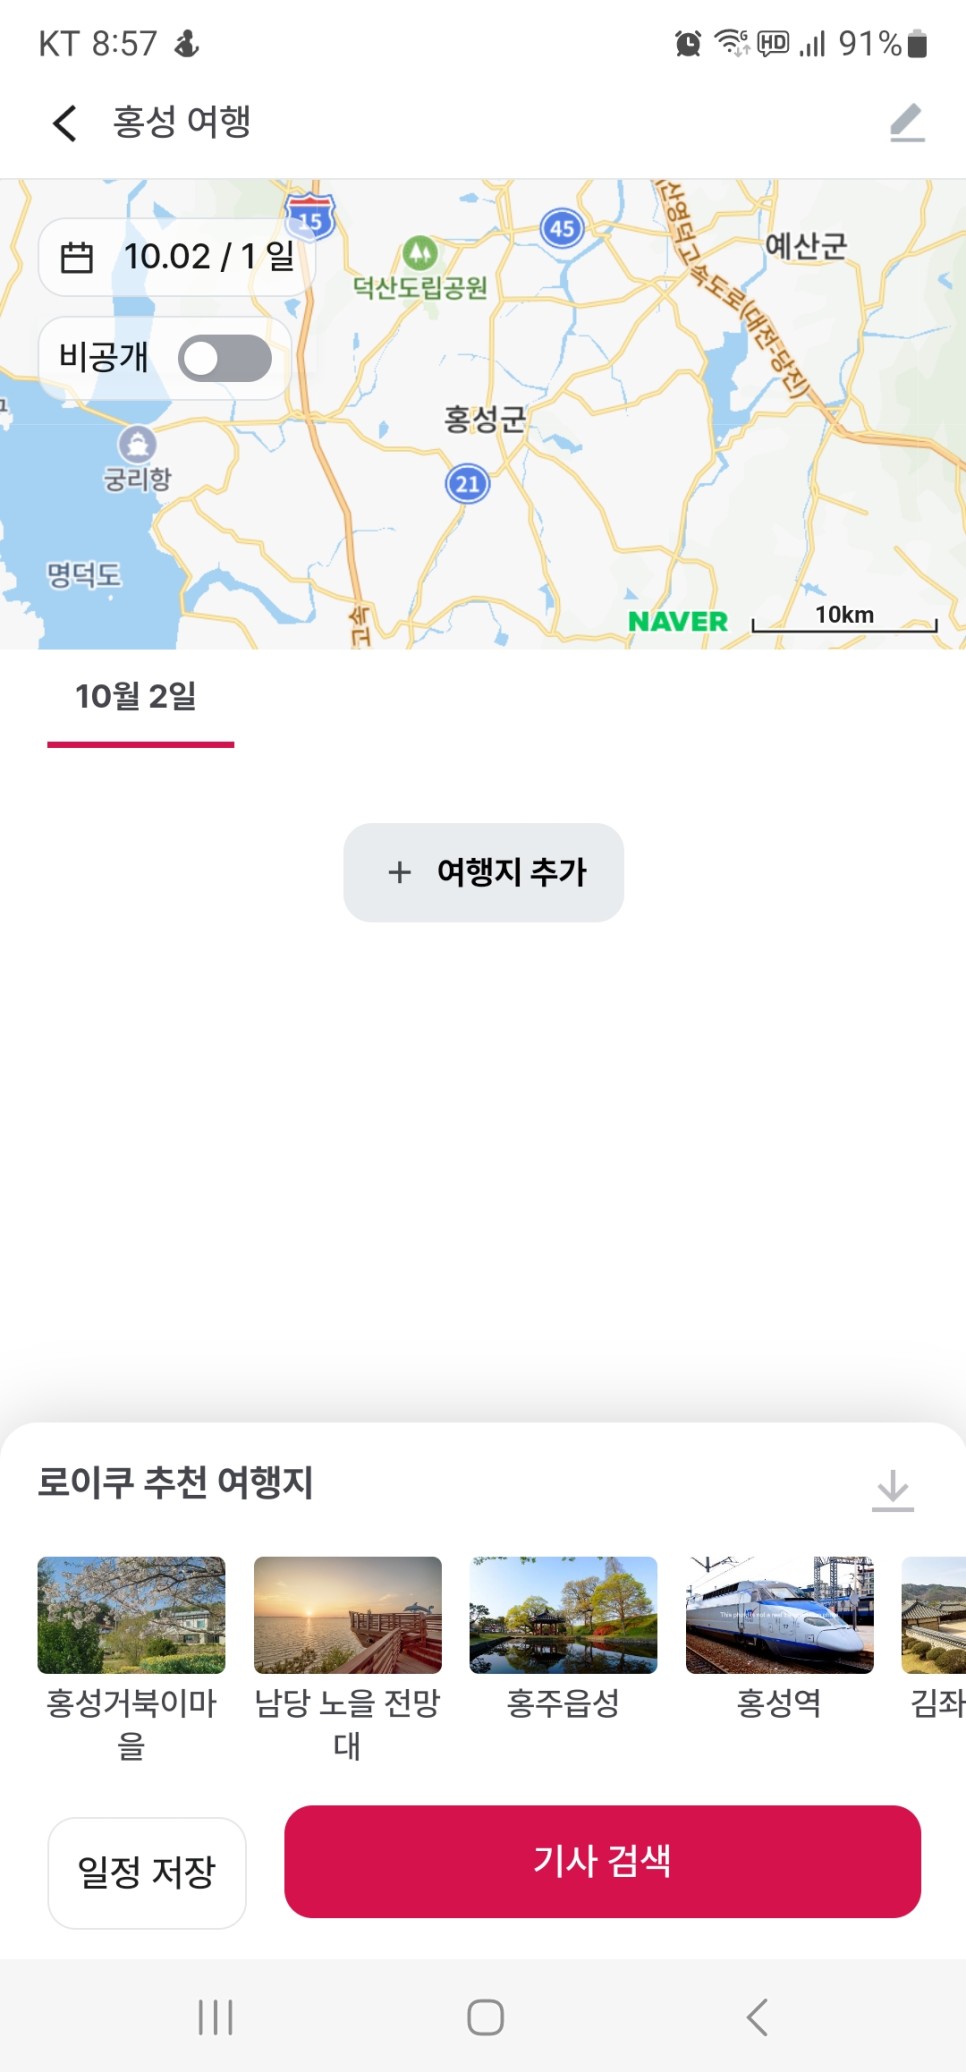 주말 드라이브 여행 가이드 홍성신바람관광택시 홍성 여행 가볼만한곳 추천!